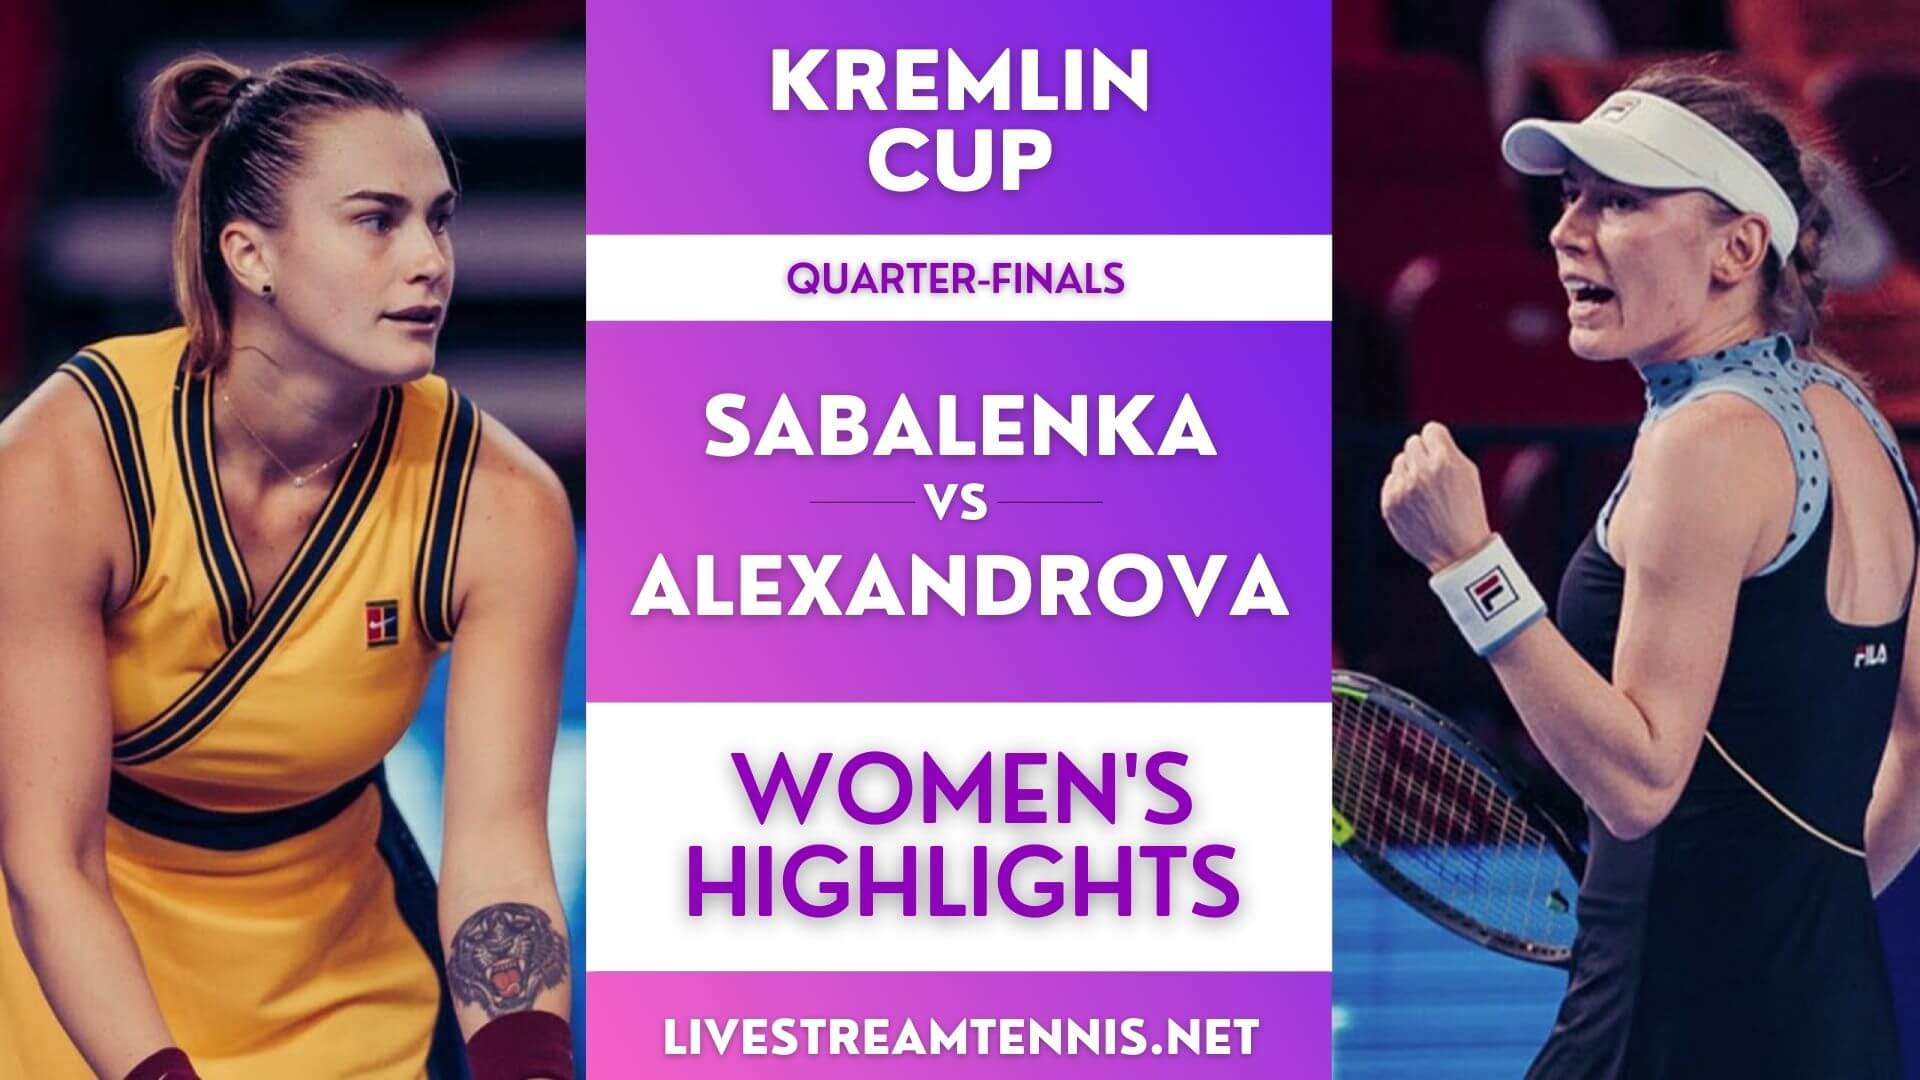 Kremlin Cup Women Quarter Final 2 Highlights 2021